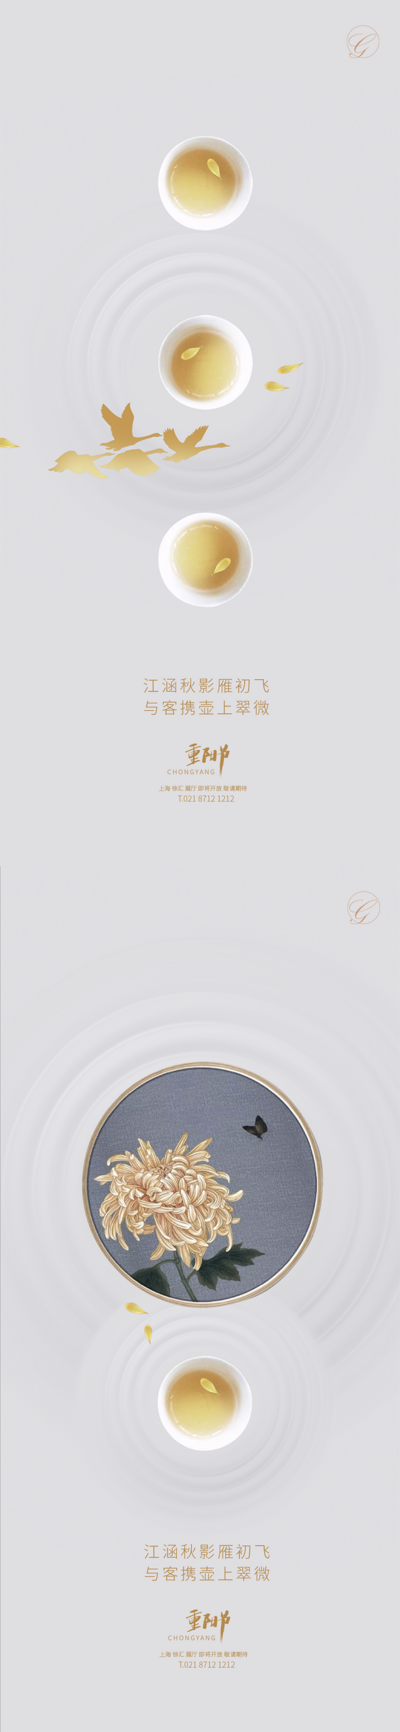 南门网 海报 房地产 重阳节 中国传统节日 茶 剪影 菊花 刺绣